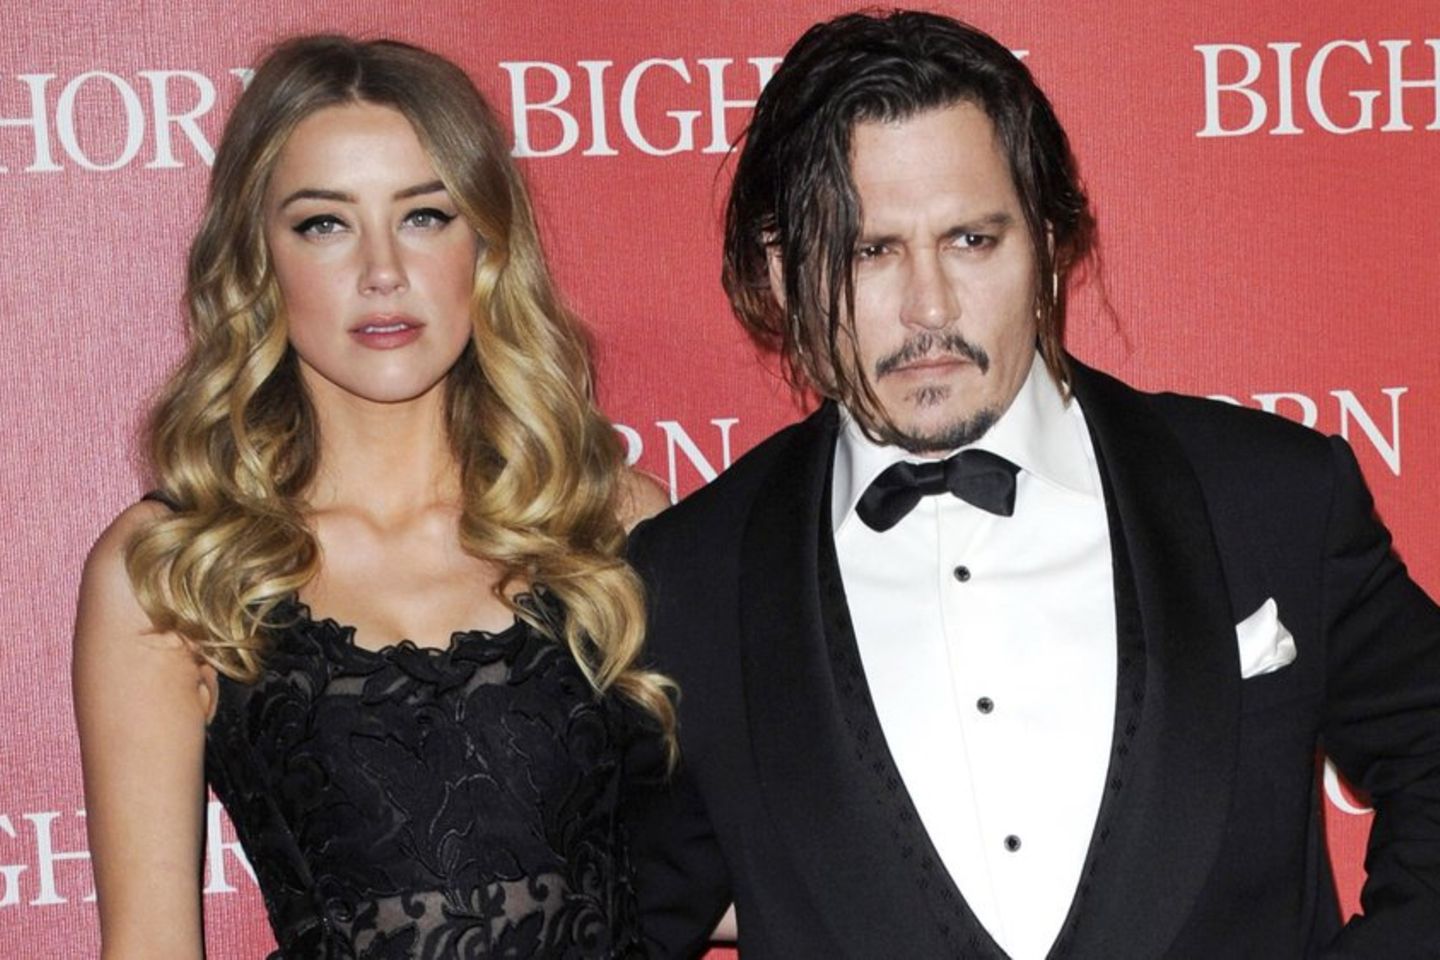 Keine Schulden mehr: Amber Heard zahlt eine Million an Johnny Depp